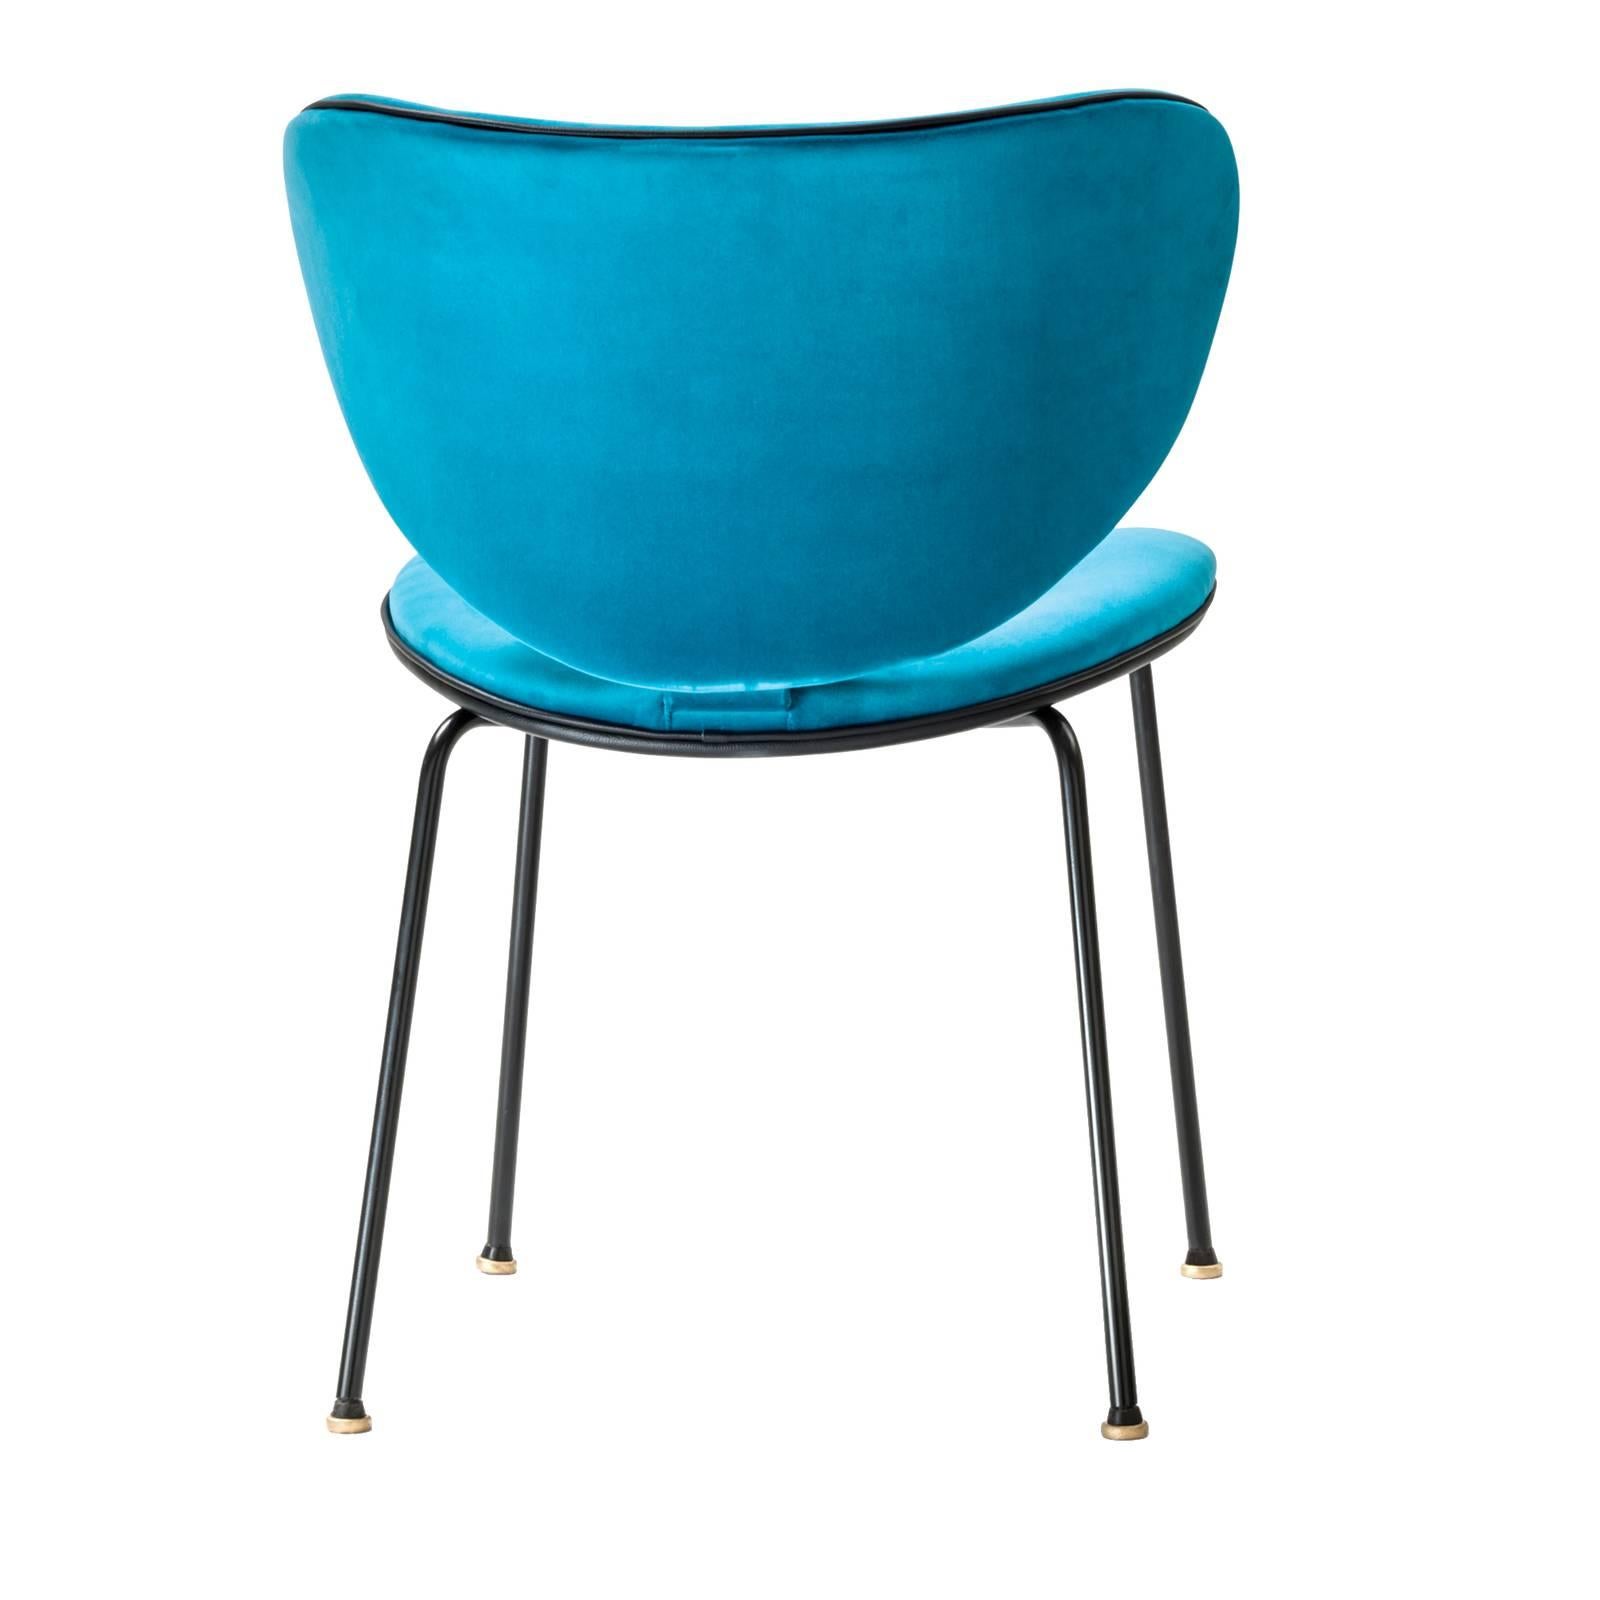 Als Teil einer neuen Kollektion, die auf der Mailänder Designwoche 2018 vorgestellt wurde, zeichnet sich dieser Stuhl durch einen modernen Look und ein elegantes Design aus, das jede Einrichtung ergänzt. Er besteht aus einem schwarz lackierten